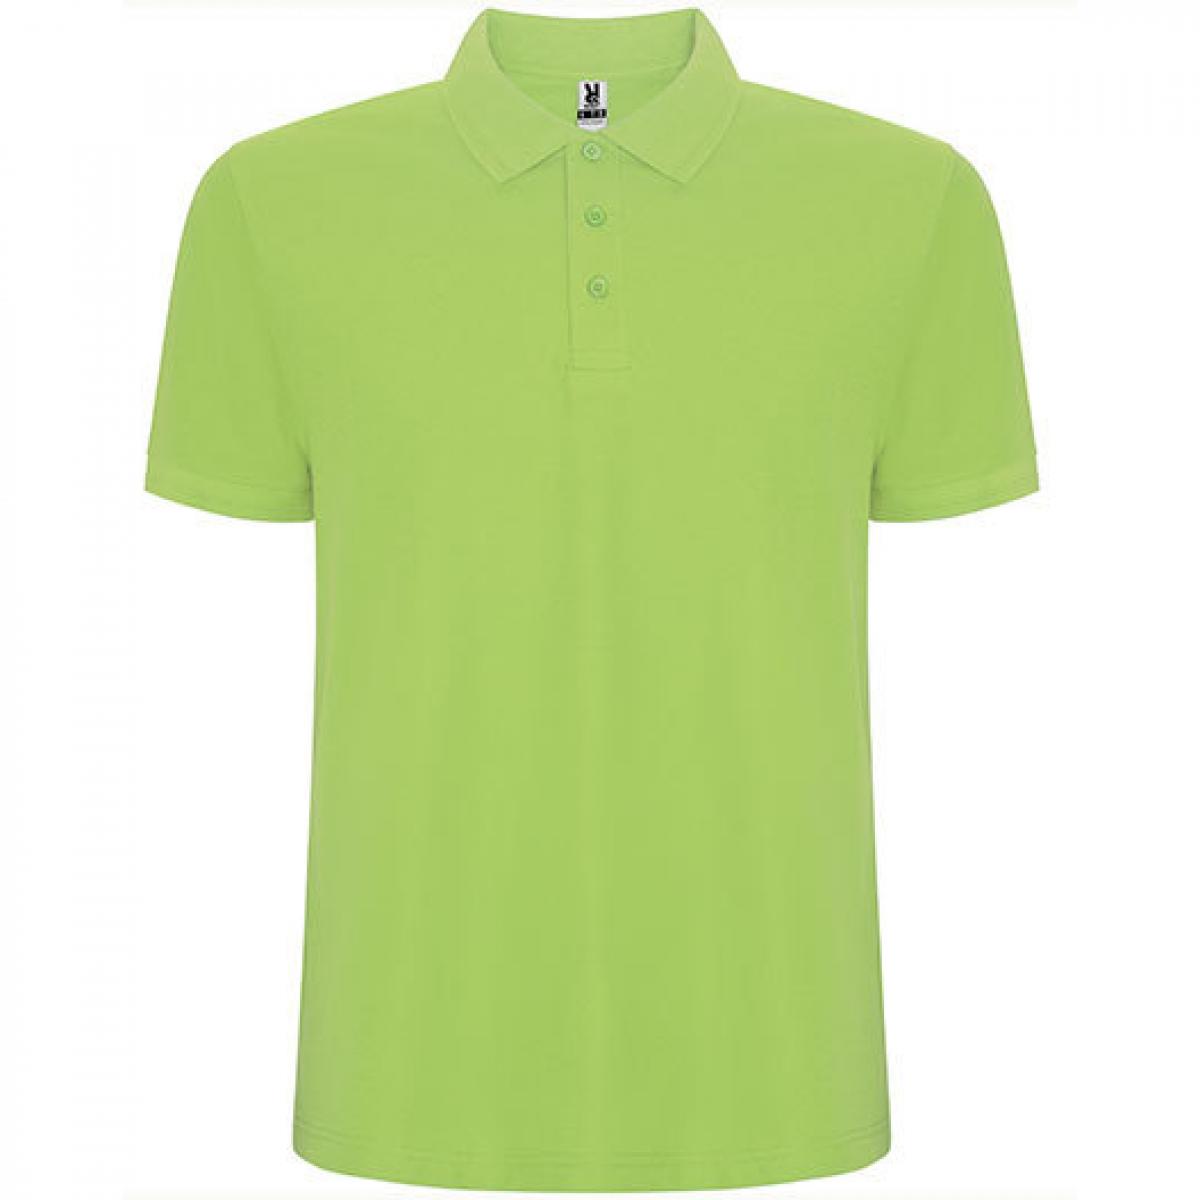 Hersteller: Roly Herstellernummer: PO6609 Artikelbezeichnung: Pegaso Premium Poloshirt - Piqué Farbe: Mantis Green 69